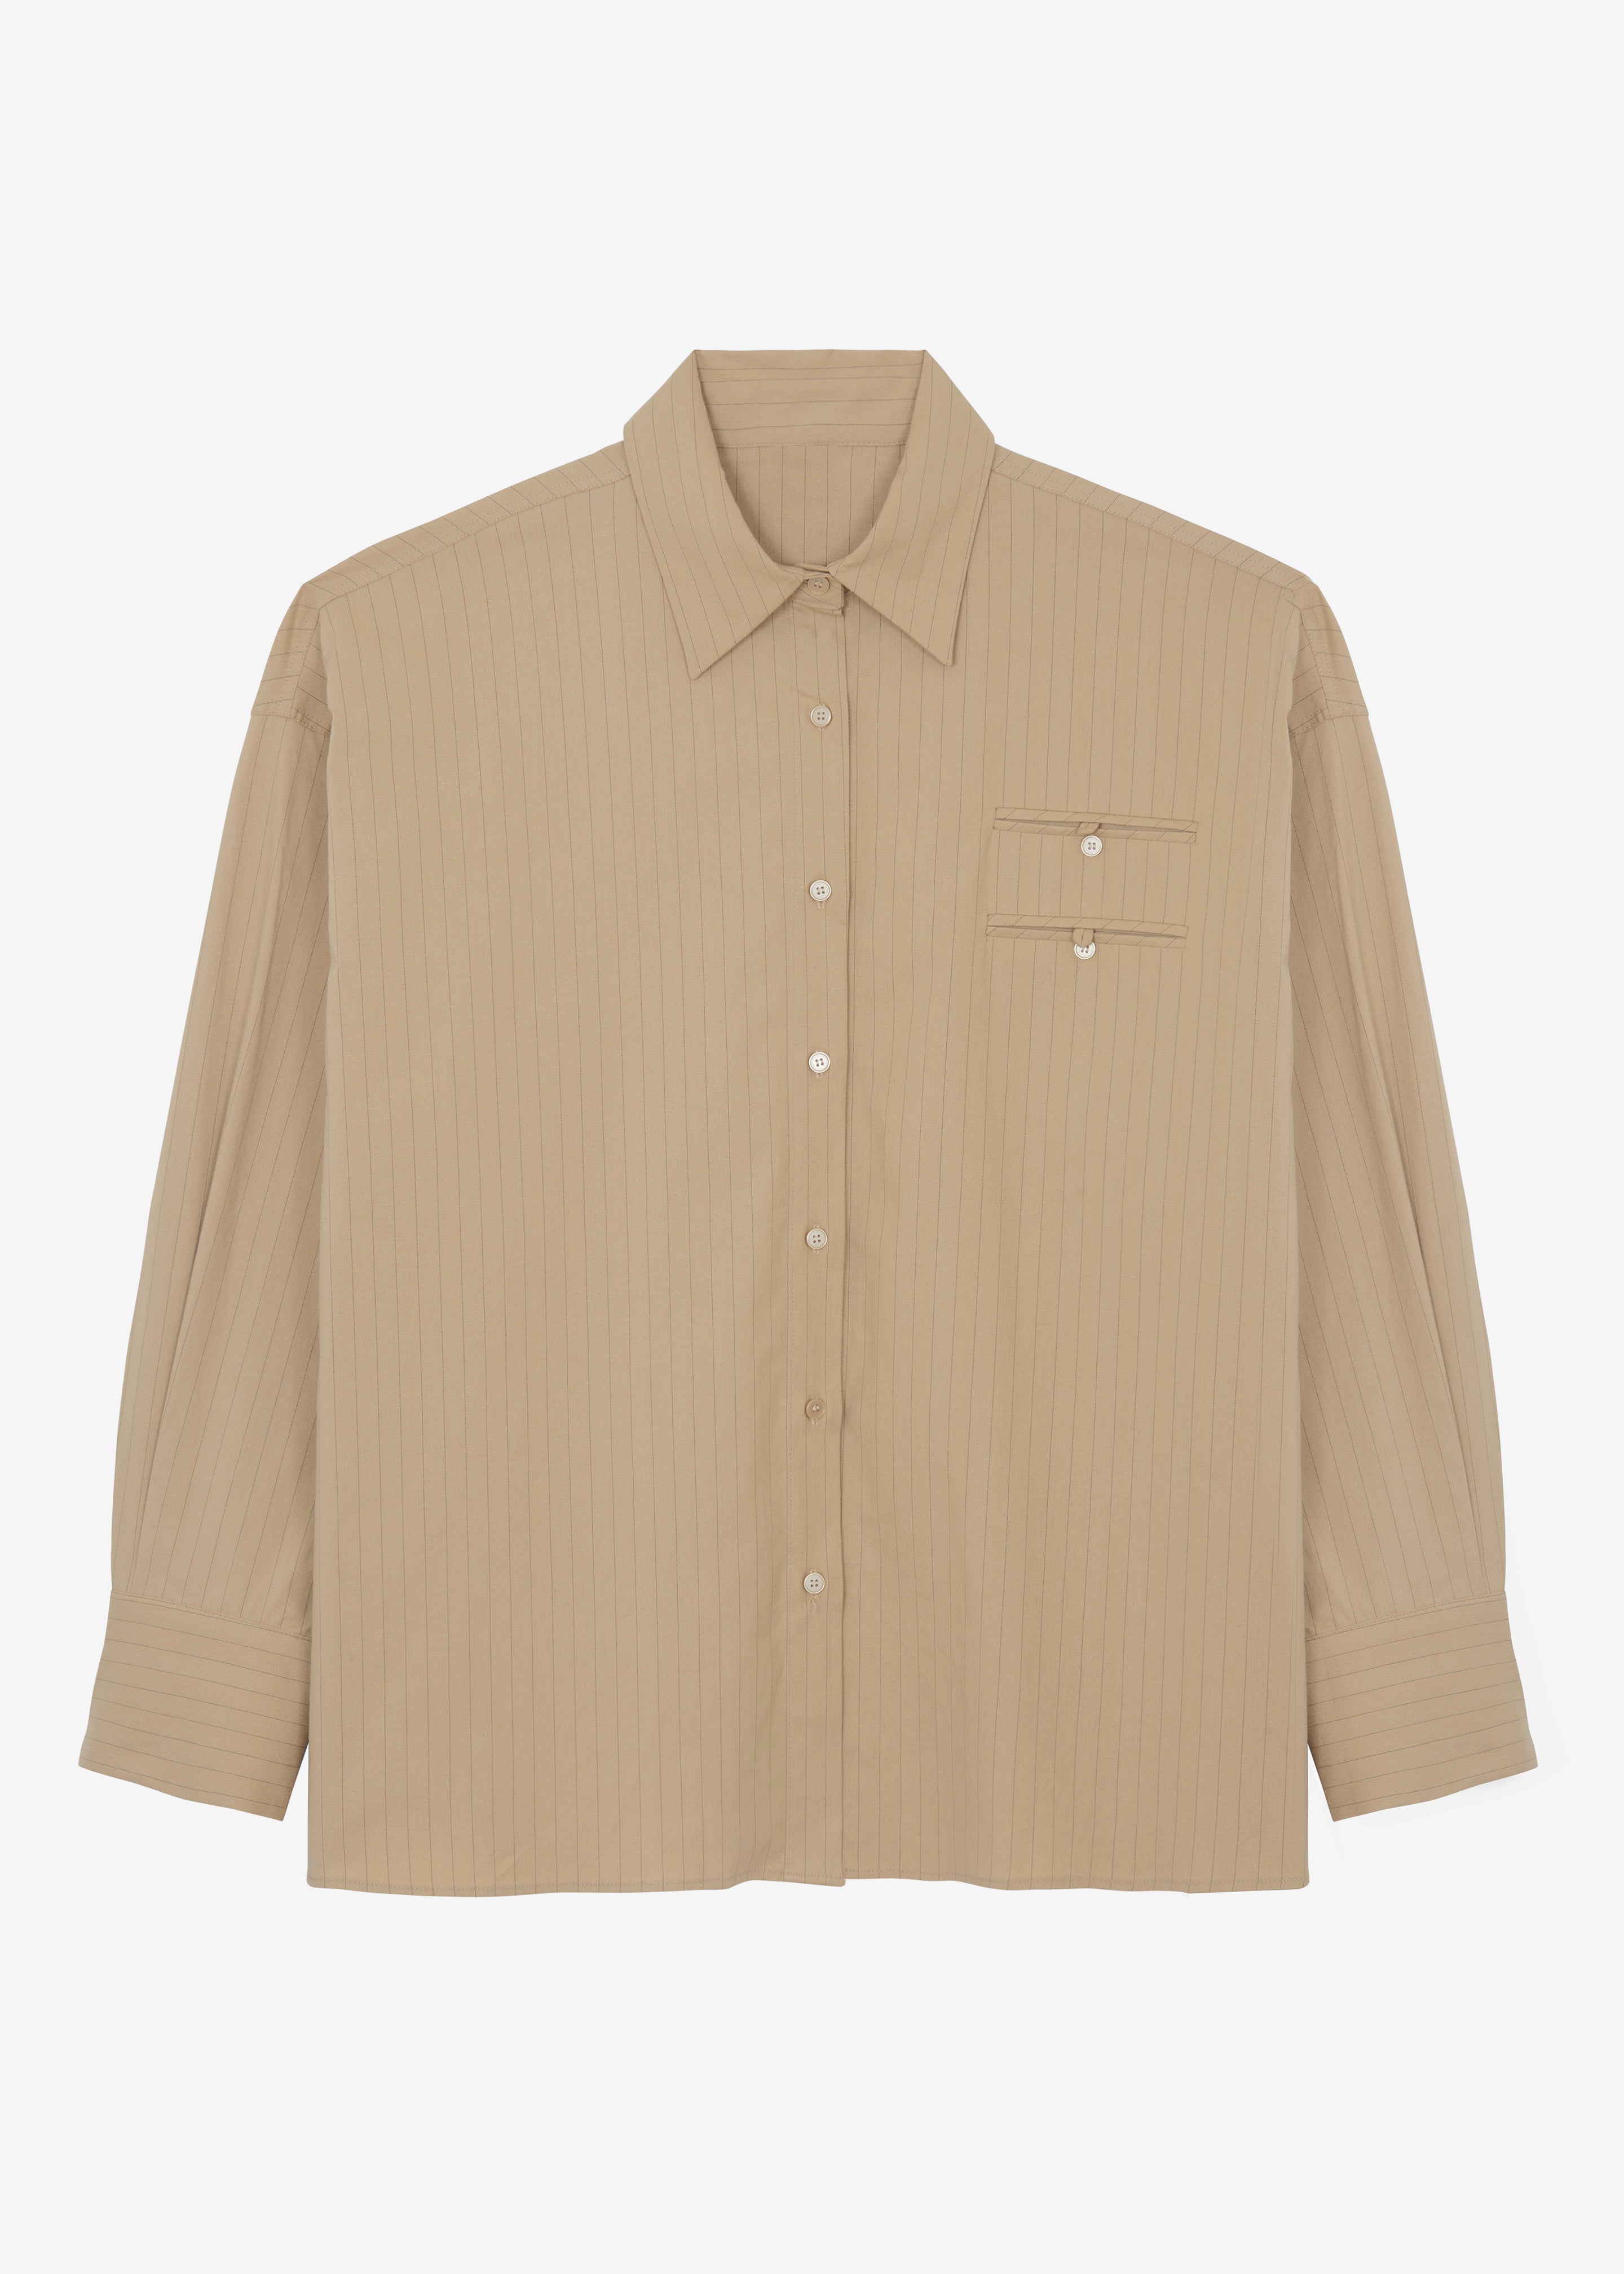 Conrad Button Up Shirt - Beige Pinstripe - 10